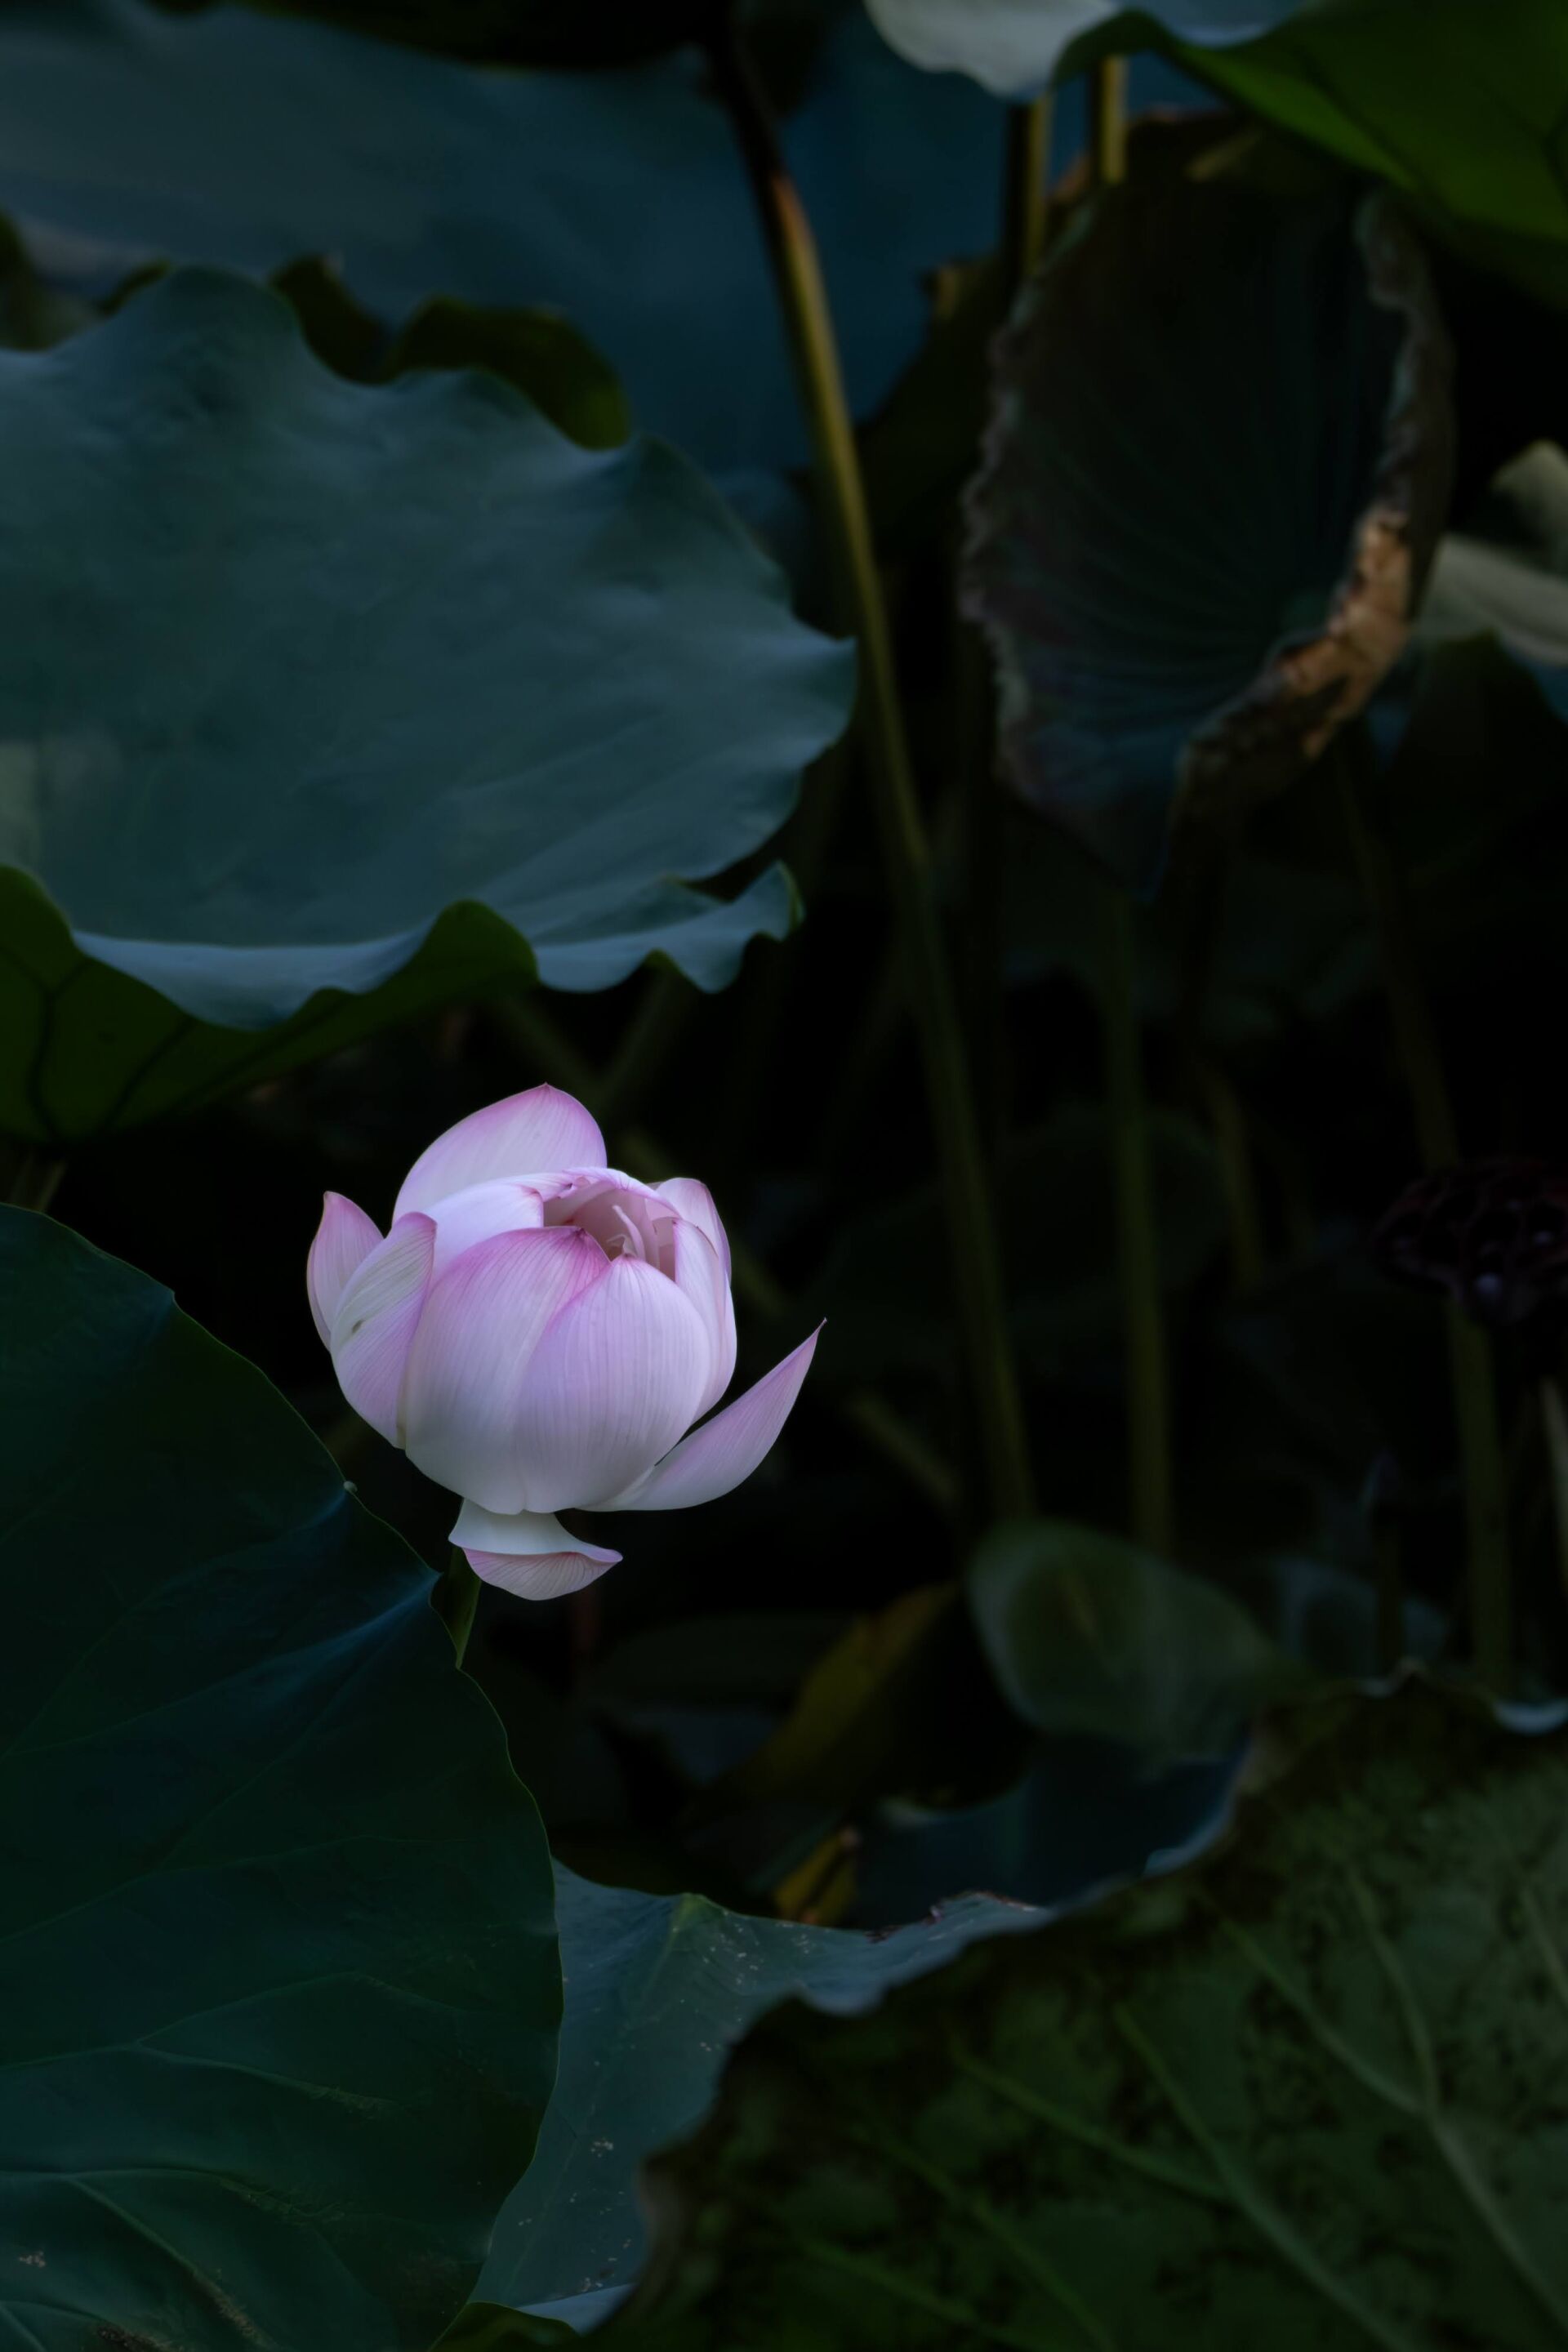 https://www.fa.gov.hk/Lotus Flower